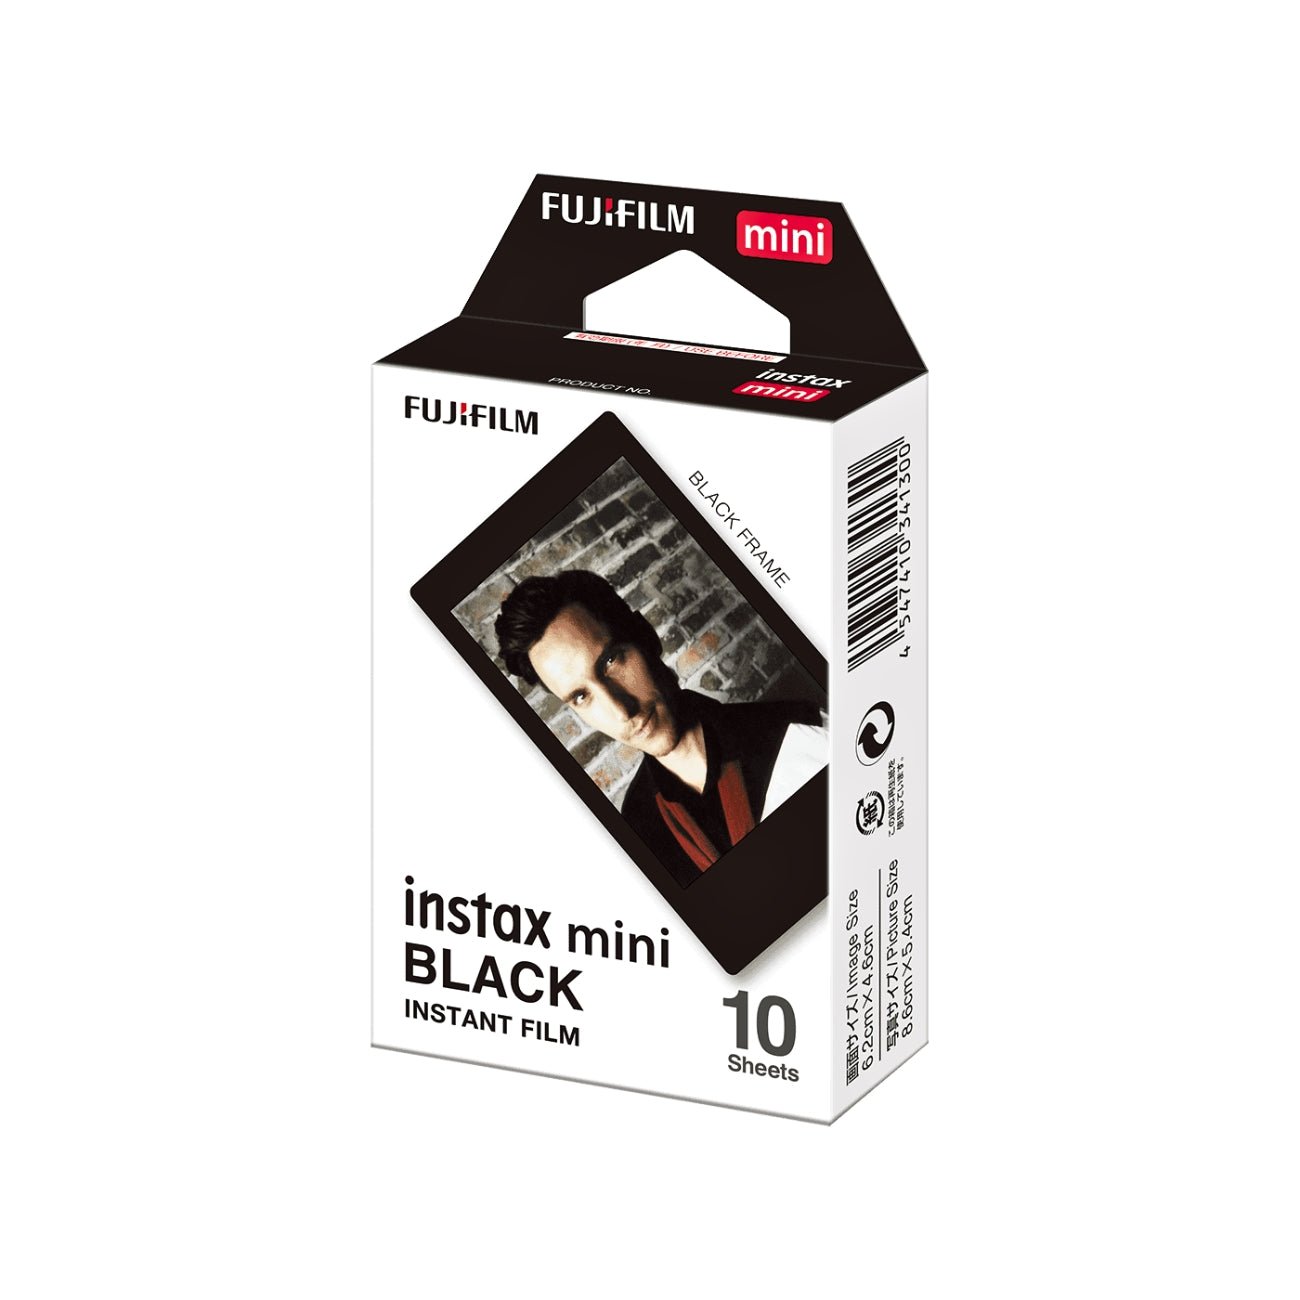 FUJIFILM INSTAX MINI Black Instant Film (10 Exposures)